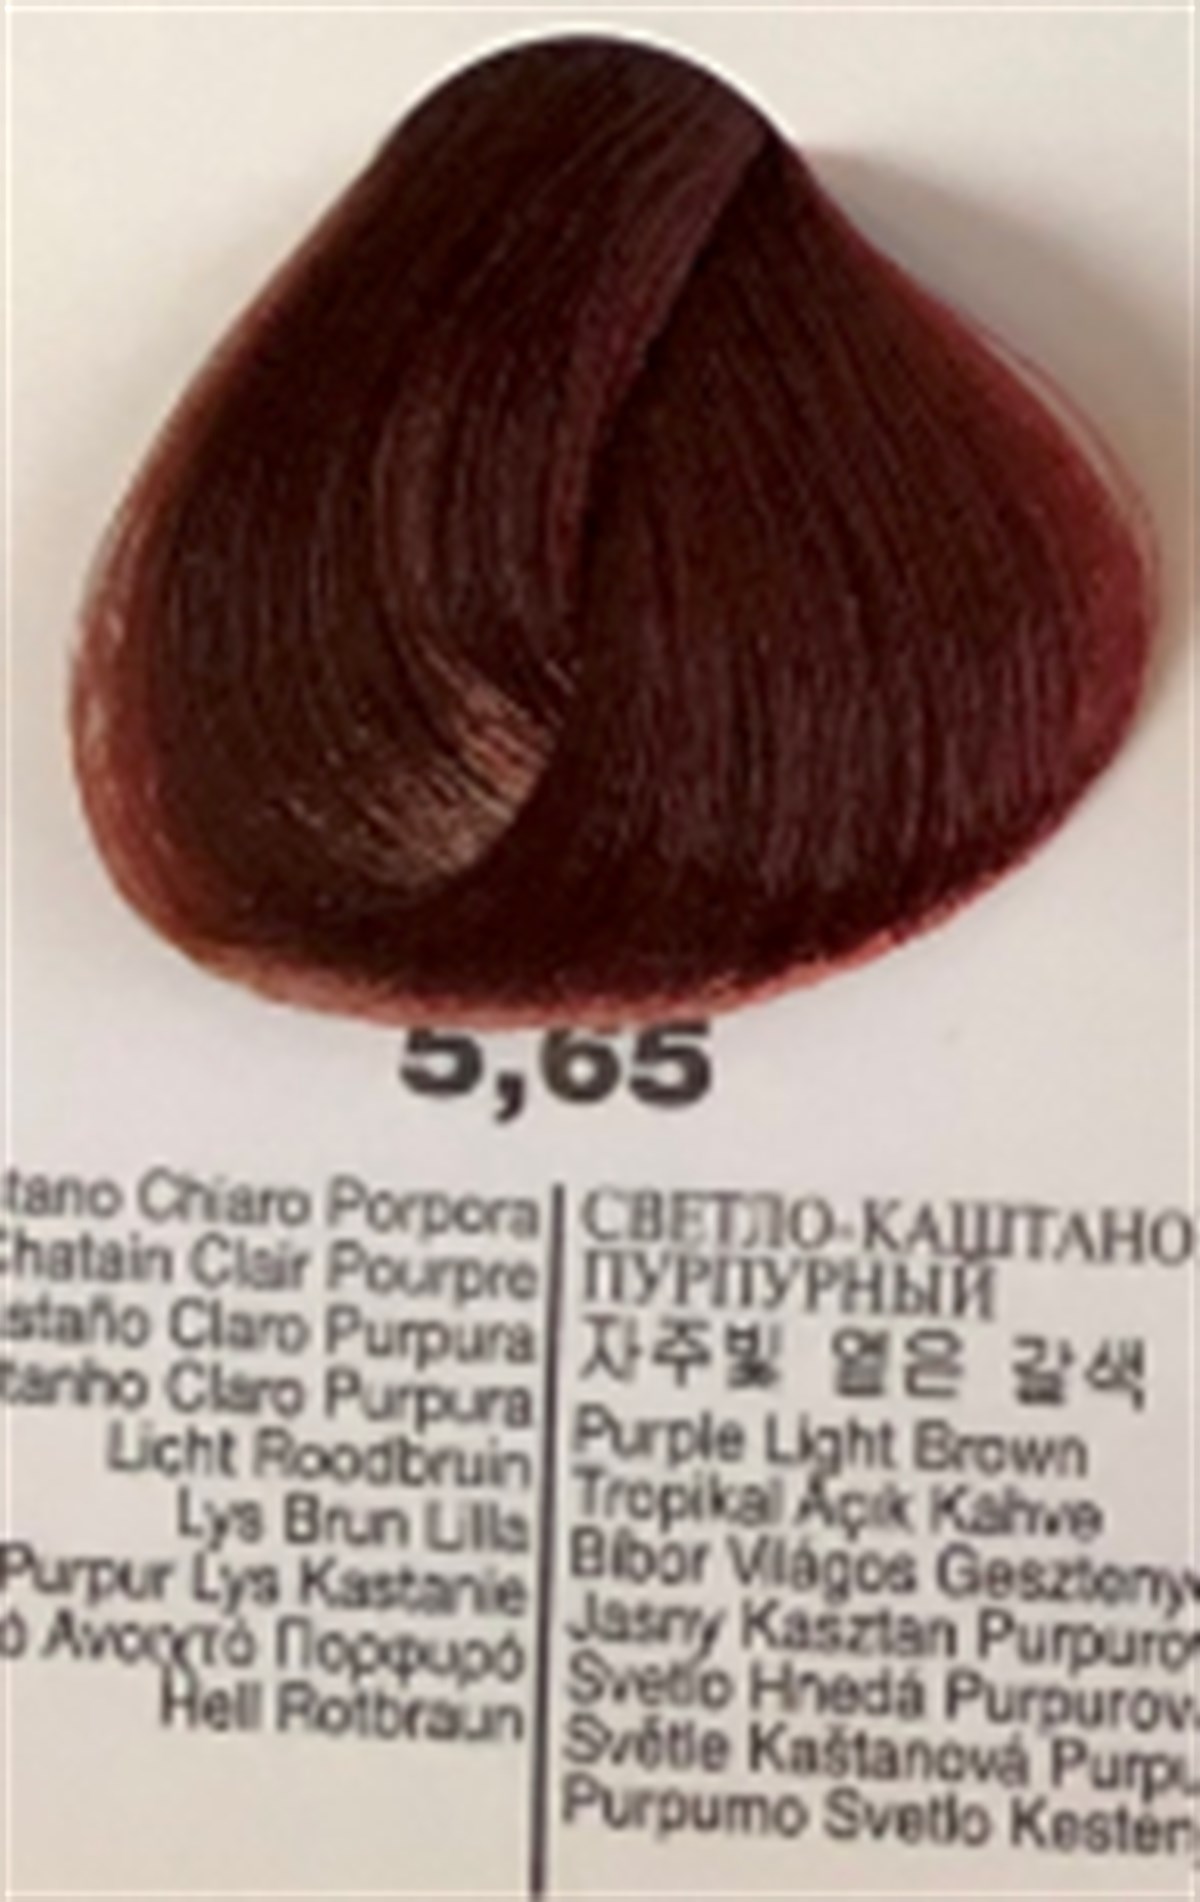 selective saç boyası 5.65SELECTİVE SAÇ BOYASI-www.arzumkozmetik.com